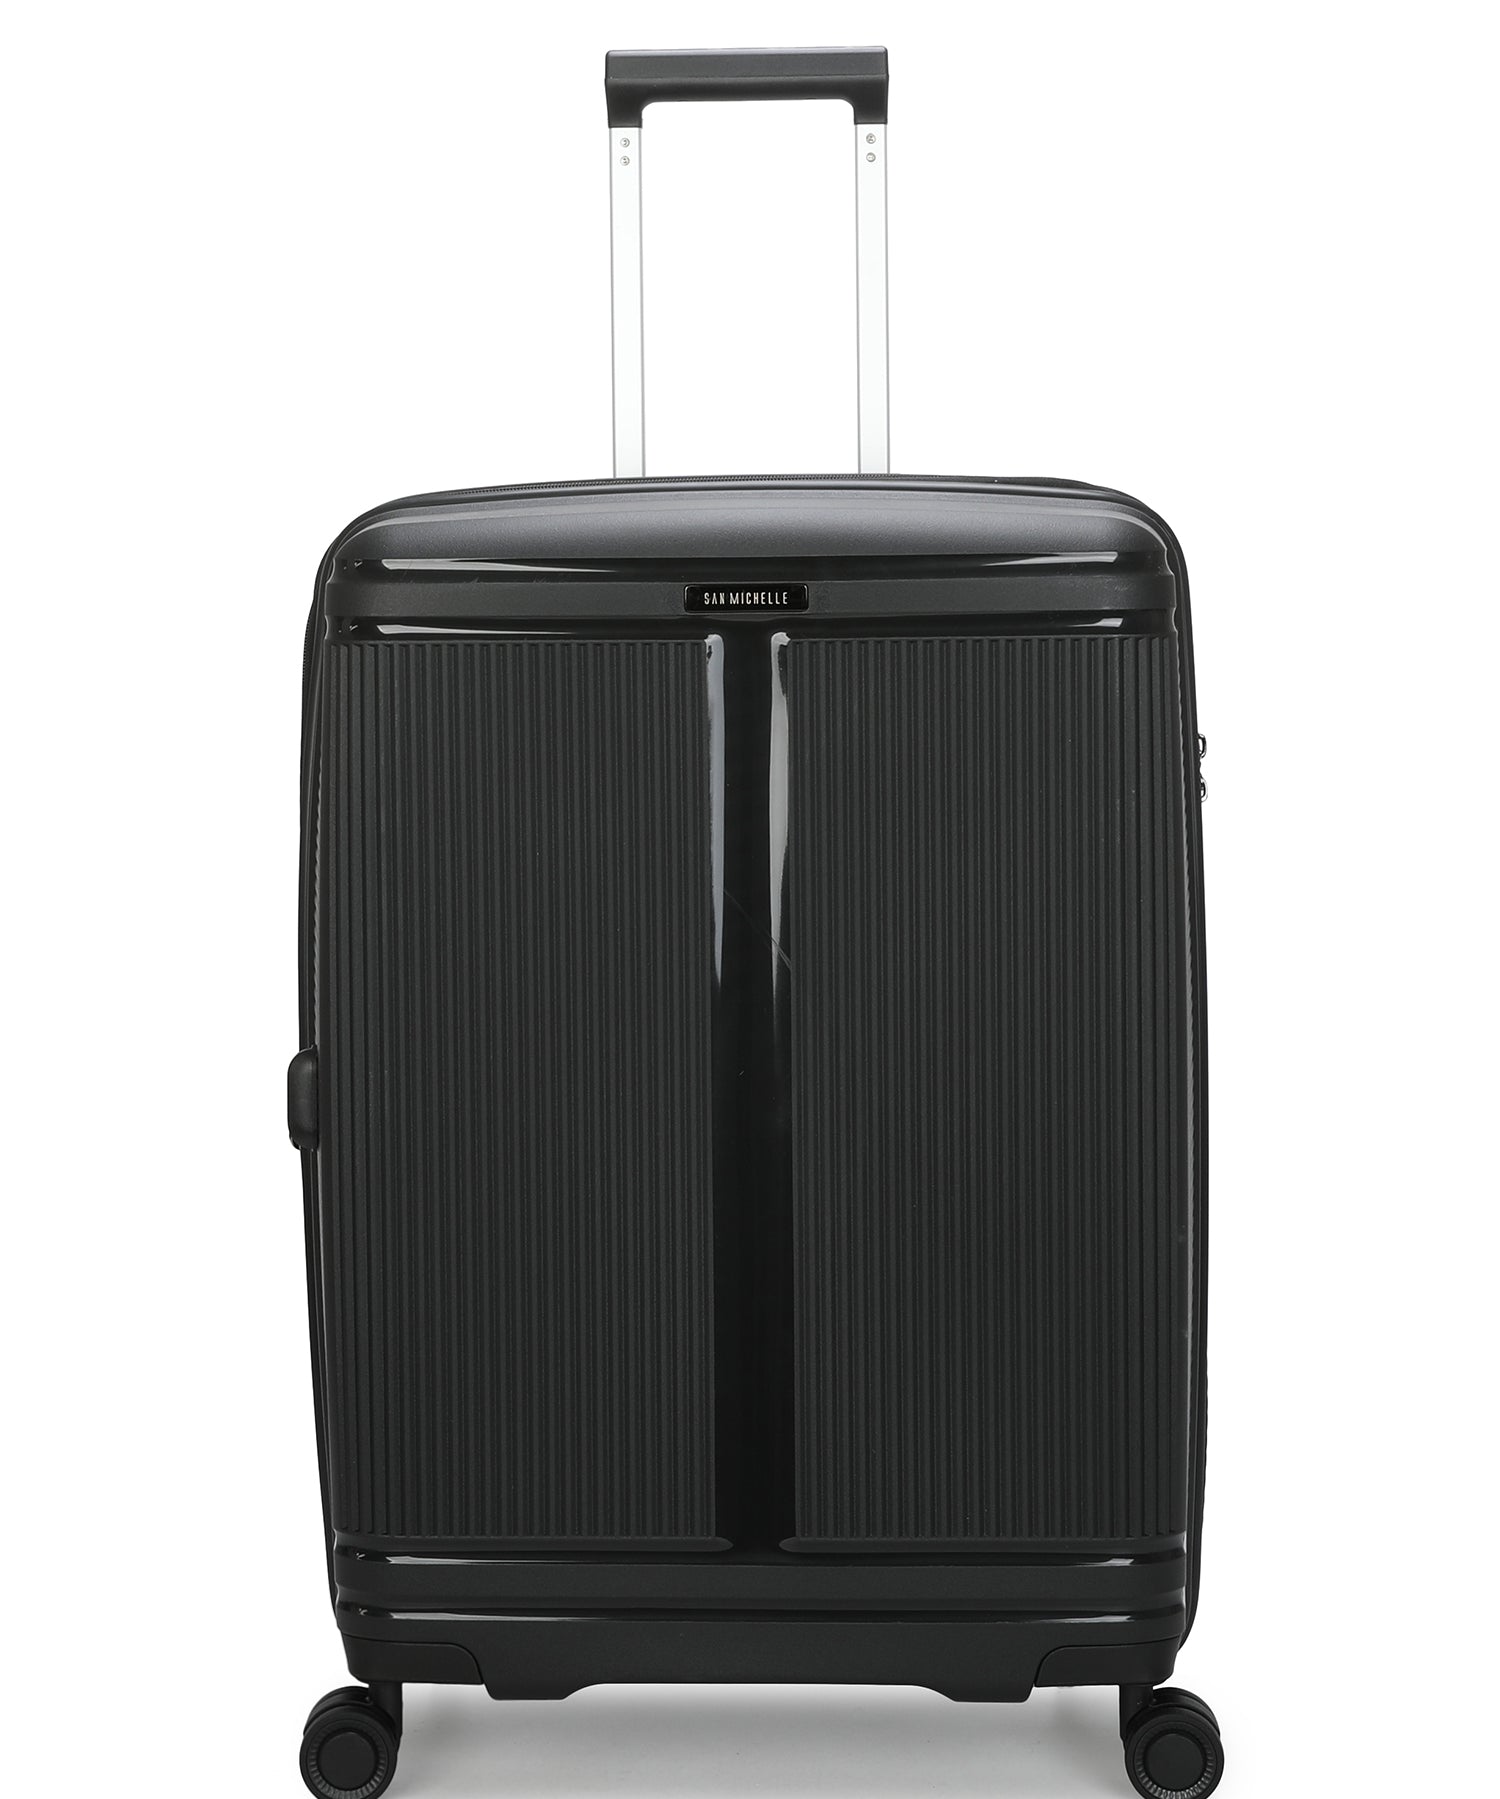 San Michelle Nova Pro 66cm Suitcase